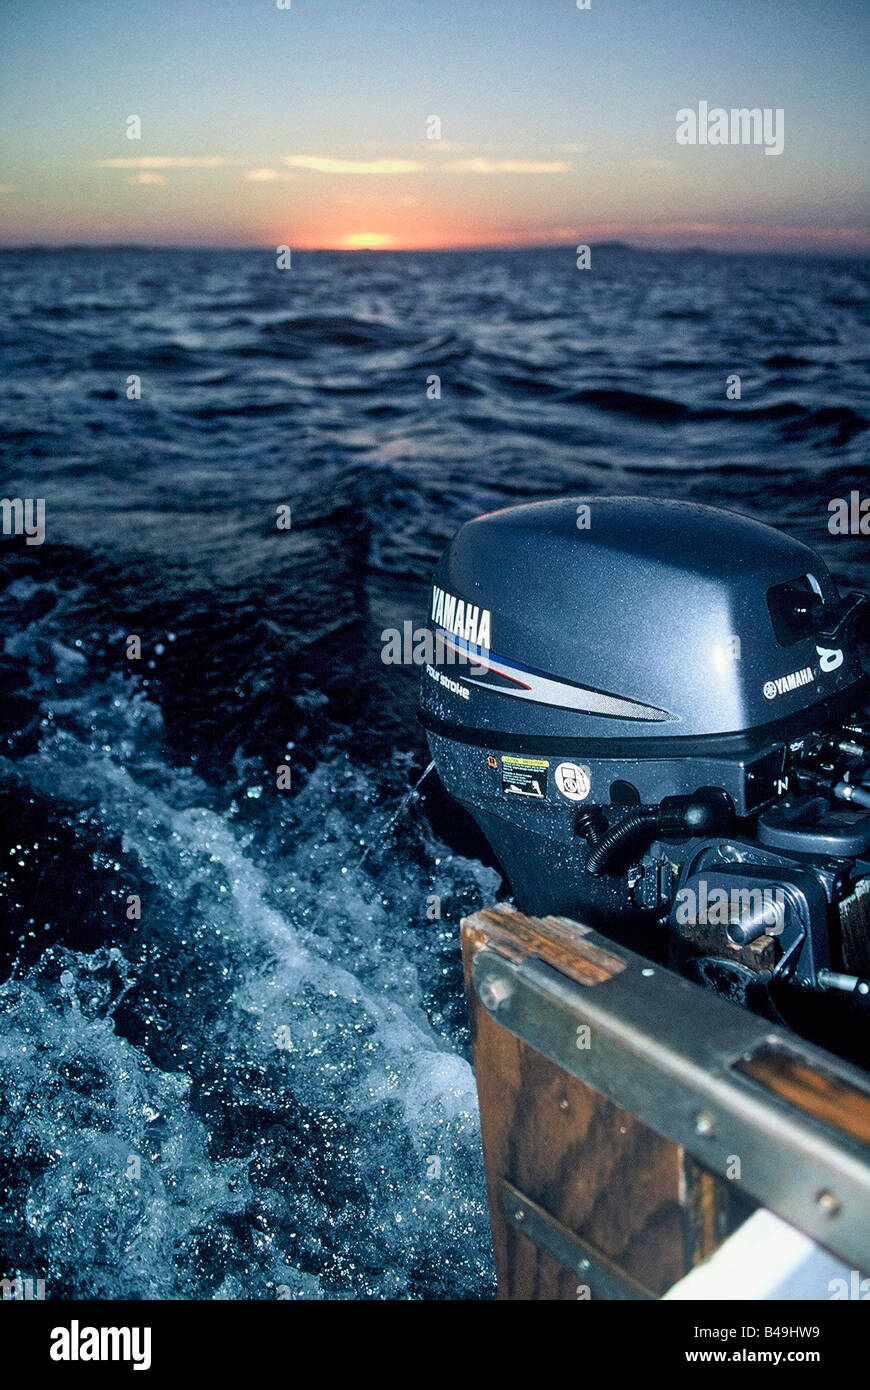 Moteur hors-bord Yamaha 8 hp fonctionnant sur voilier Photo Stock - Alamy